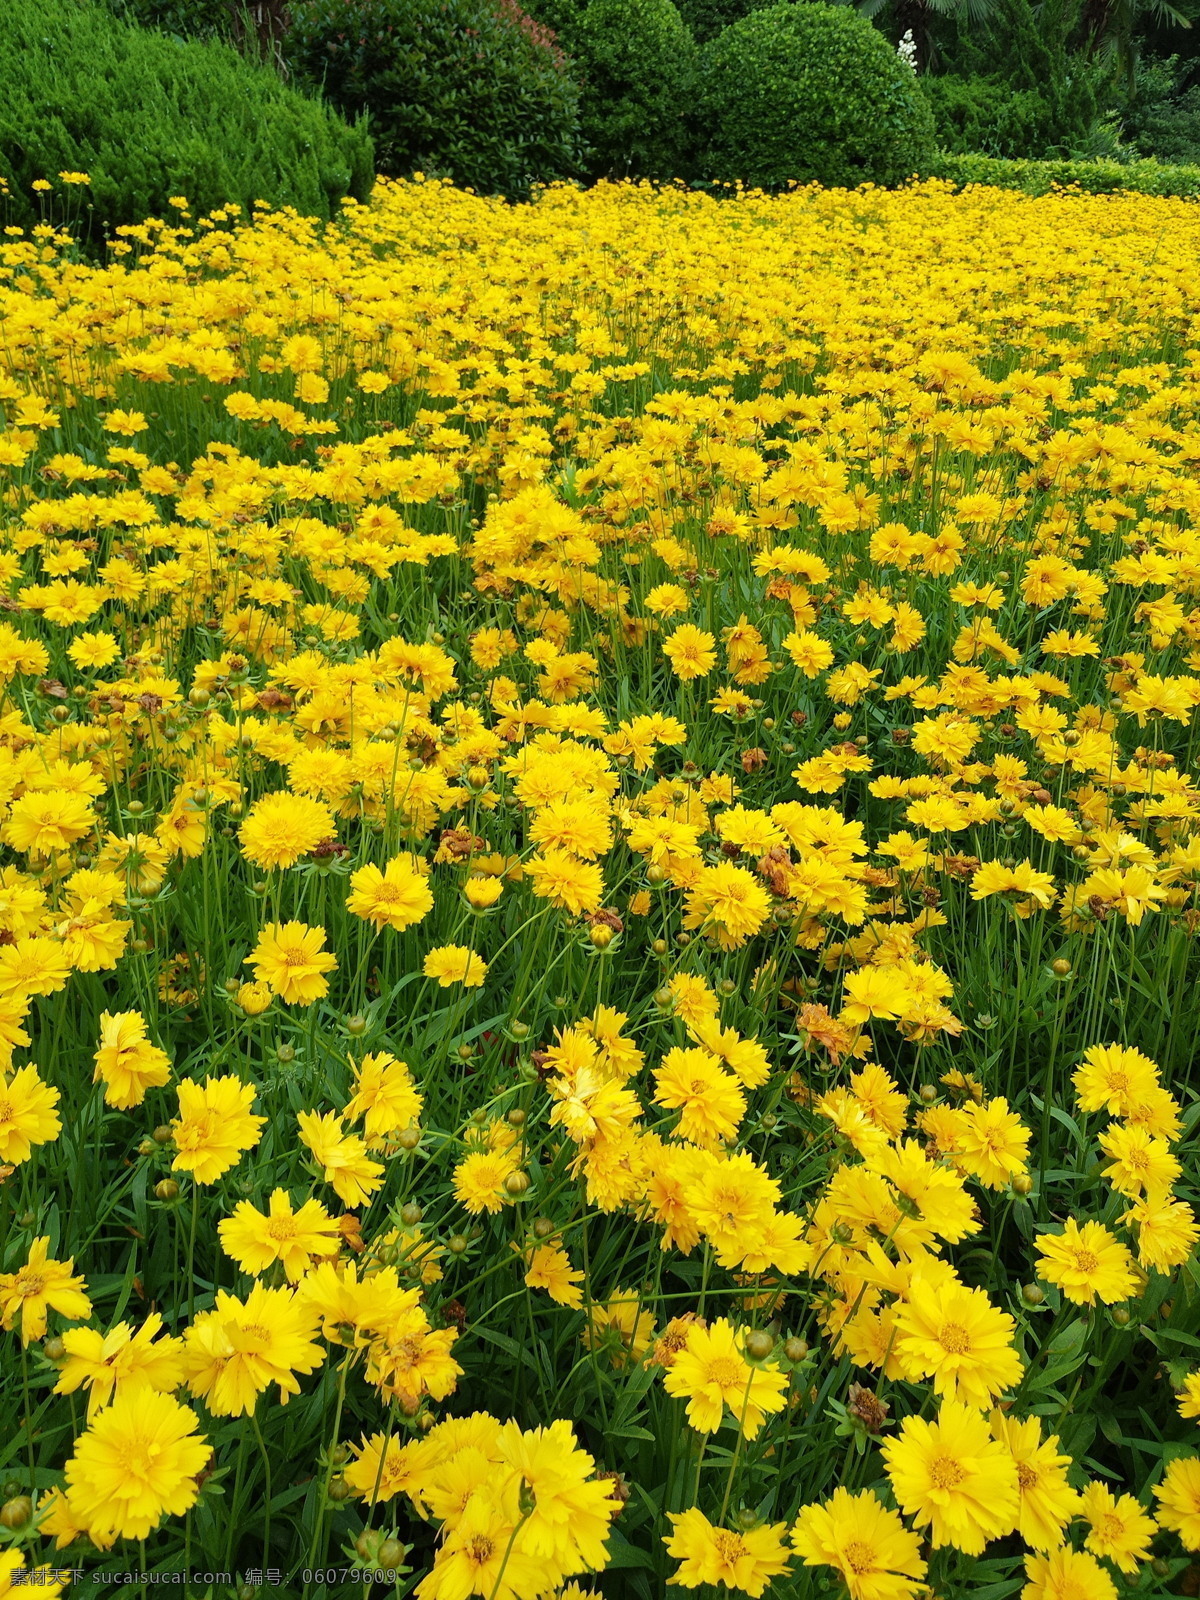 黄色 笑脸花 花瓣 大片太阳花 自然景观 自然风景